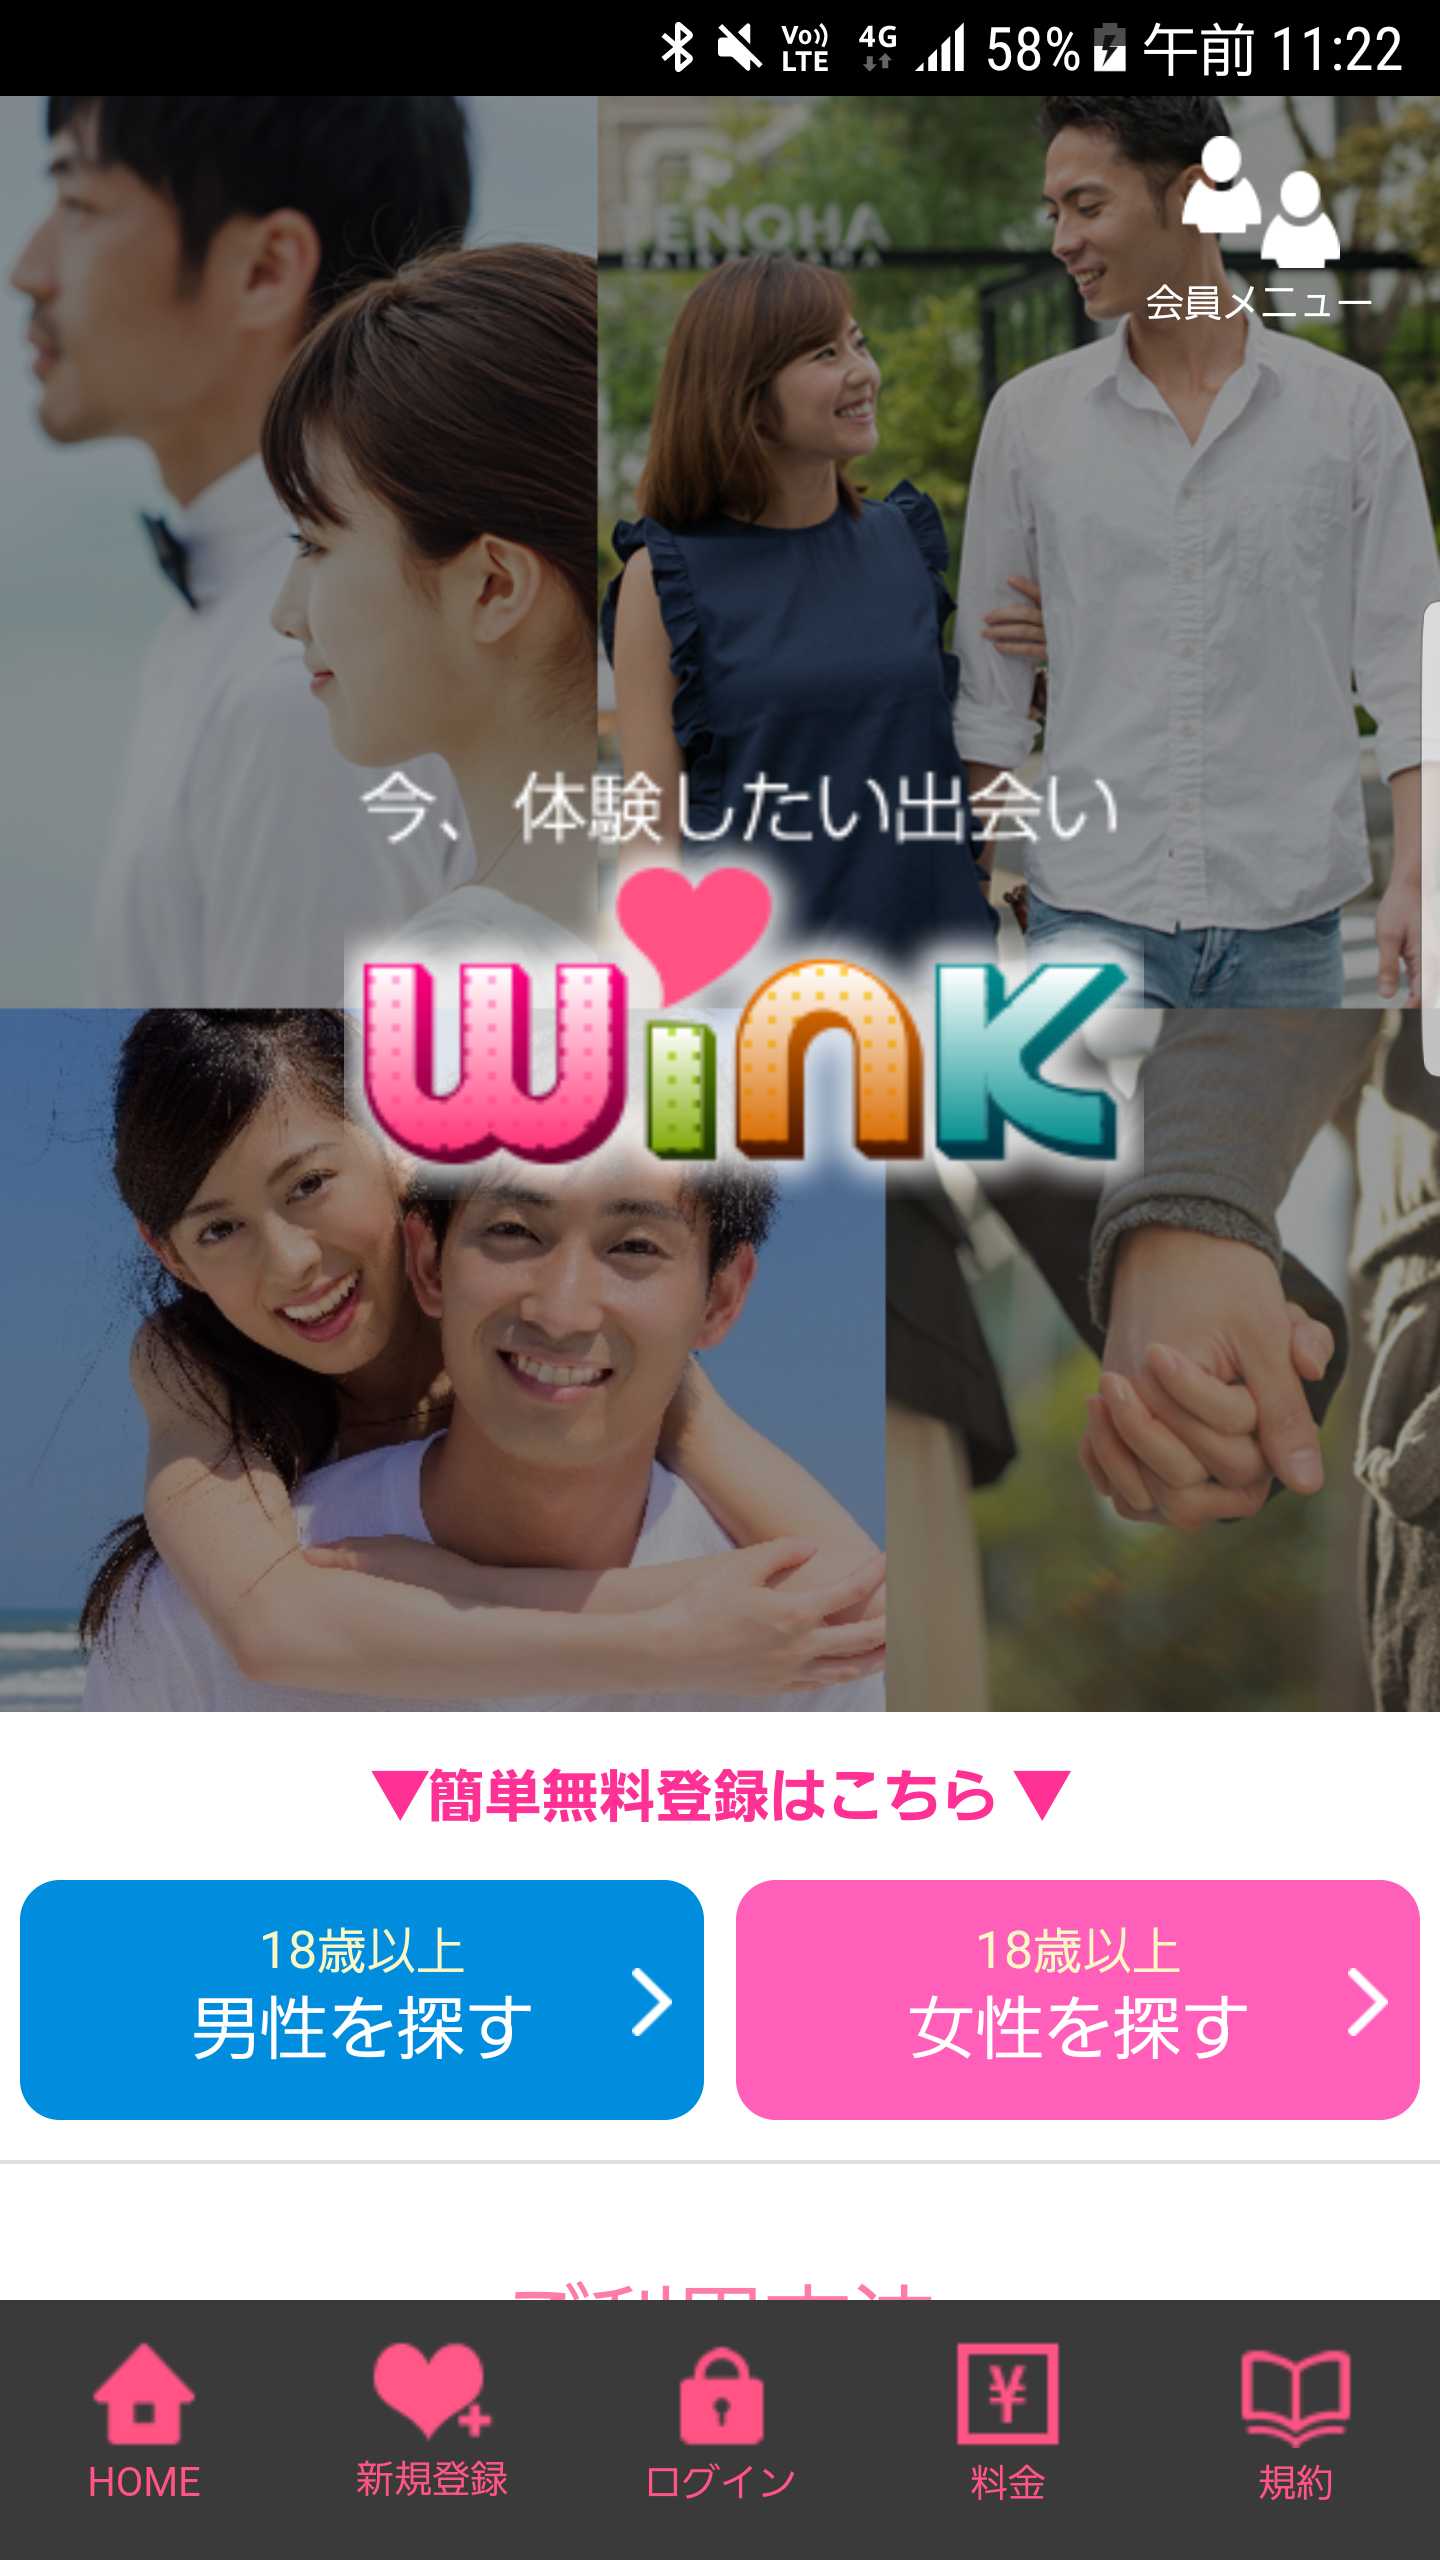 悪質出会い系サイト「Wink(ウインク)」スマートフォン用の画像